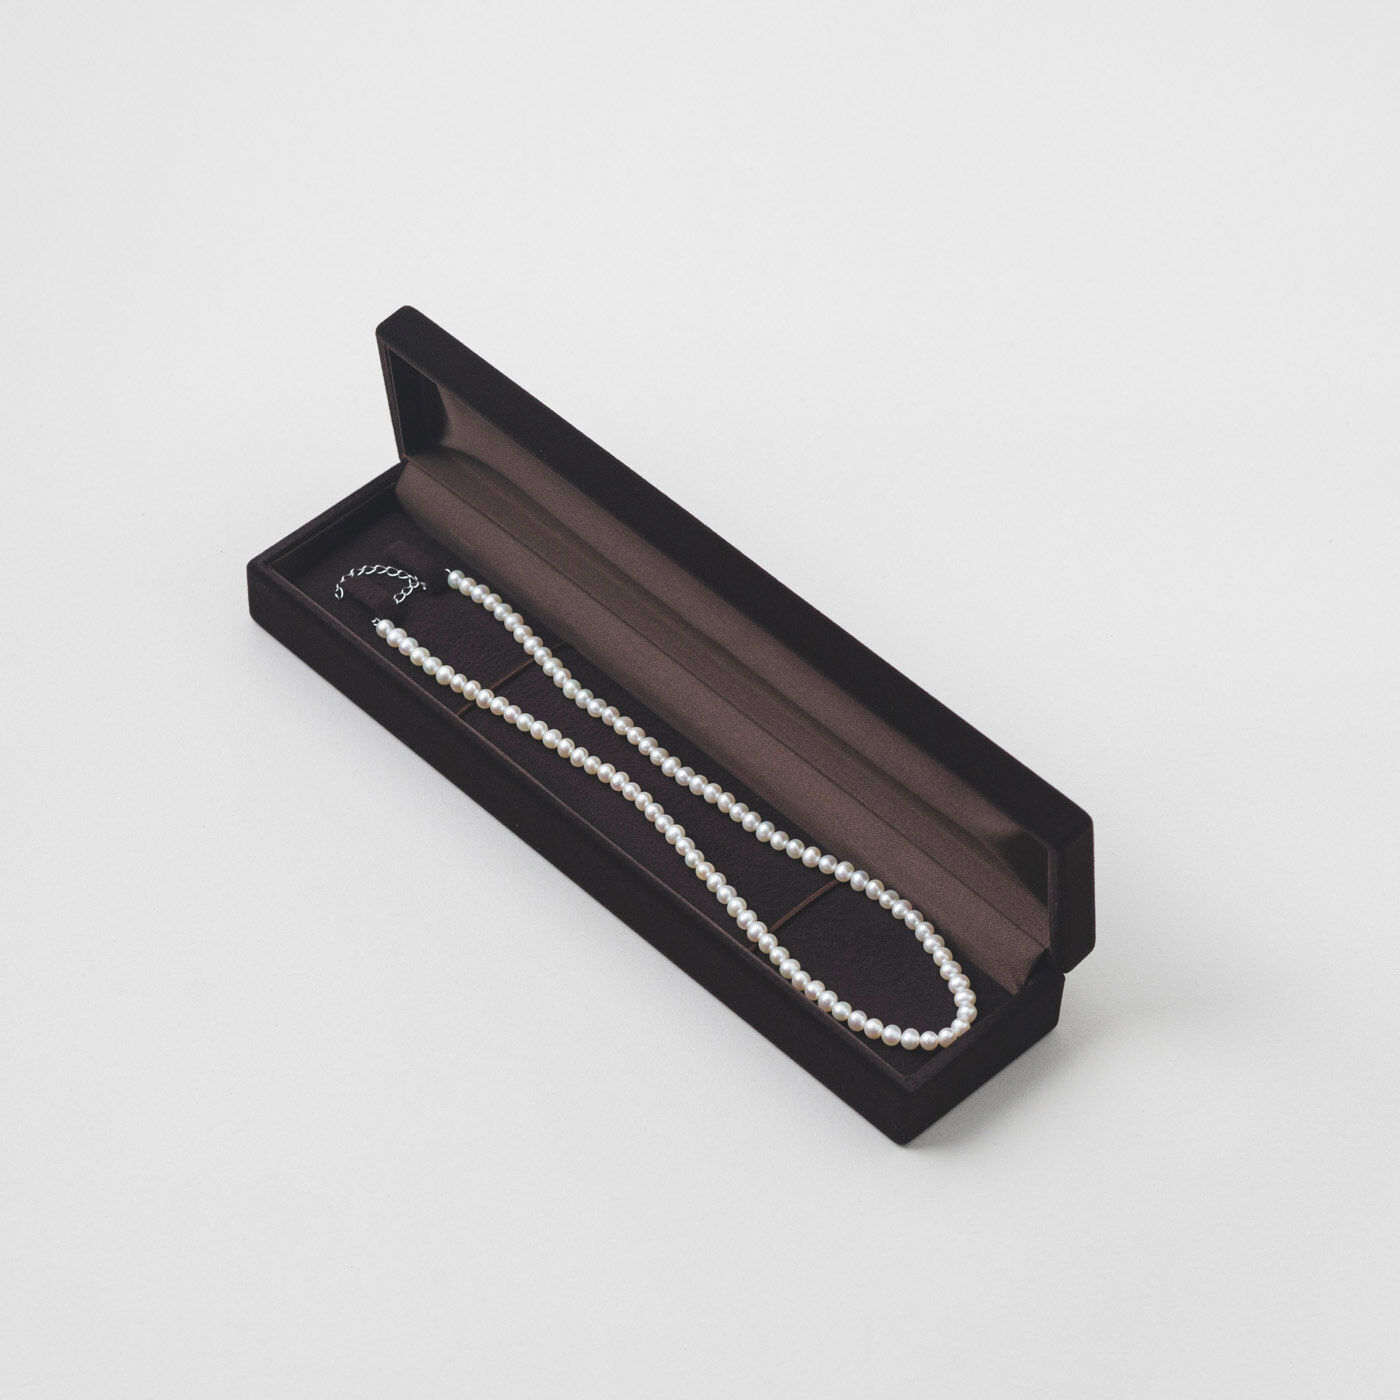 ＆Stories|神戸の老舗真珠メーカーが手掛けた 淡水パールのネックレス〈シルバー925〉|高級感あるケースに入れてお届けします。贈り物にもぴったり。